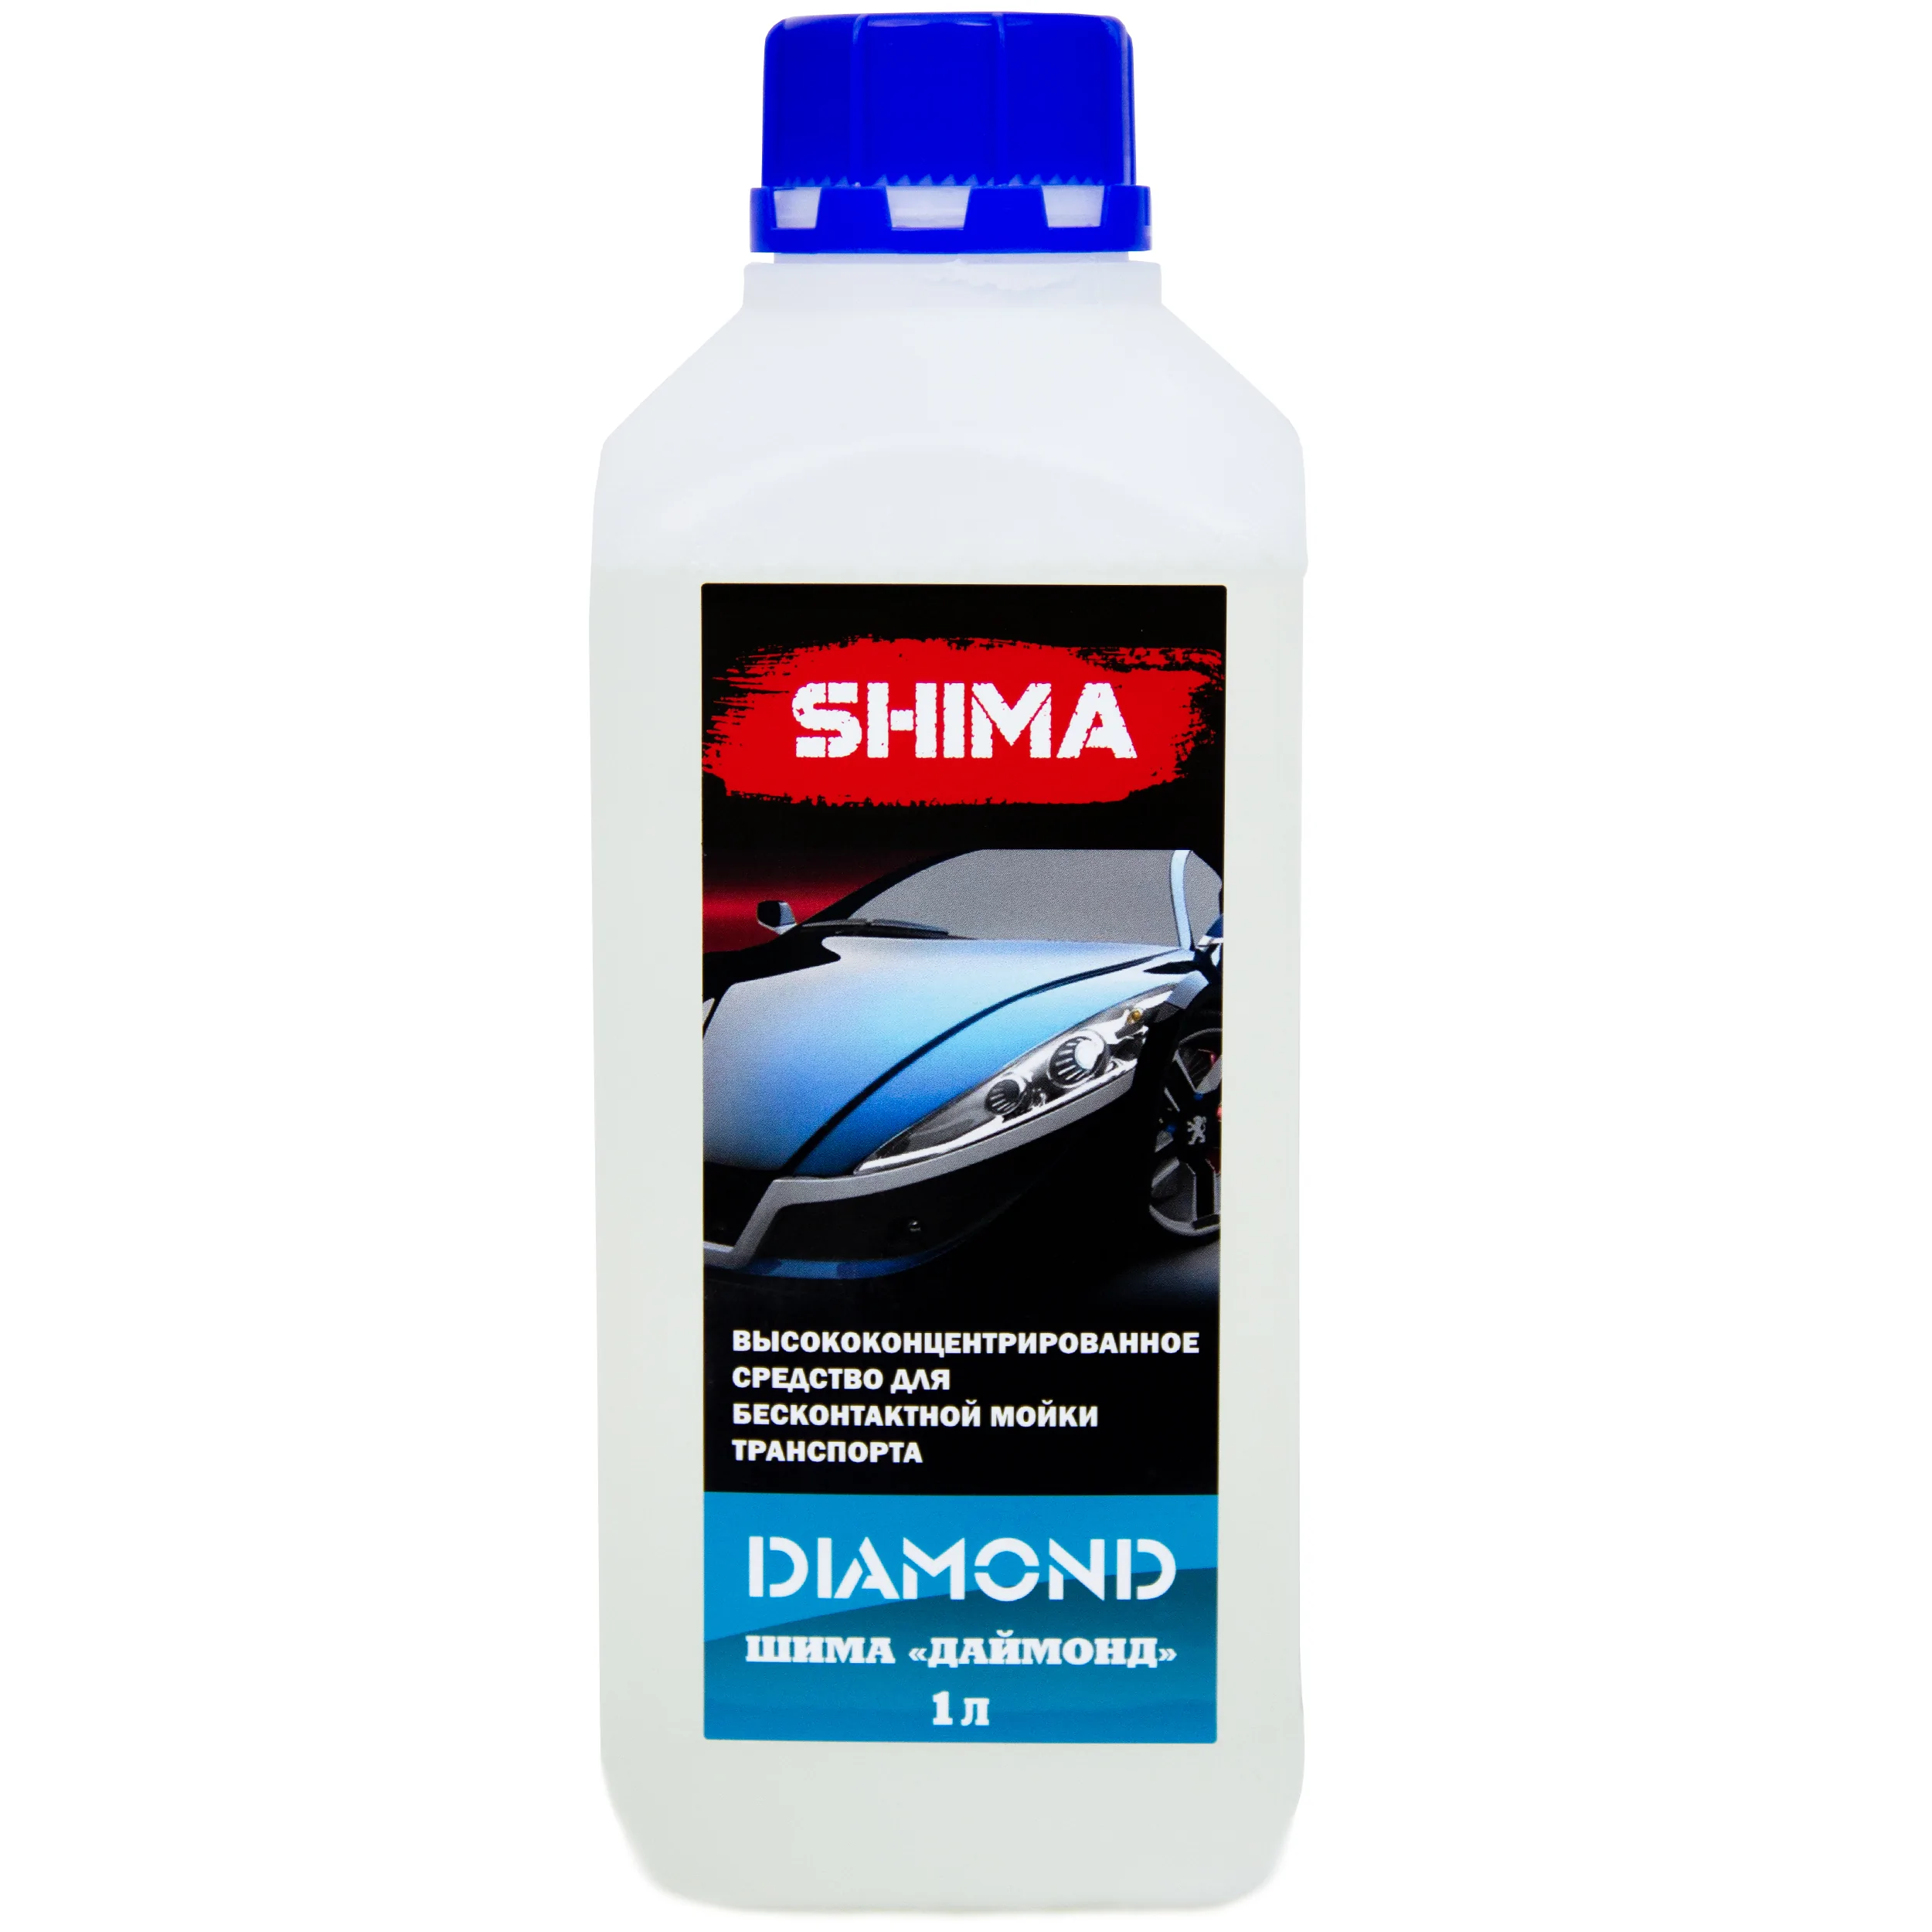 Высококонцентрированное средство для бесконтактной мойки транспорта Shima Diamond 1л Уценка